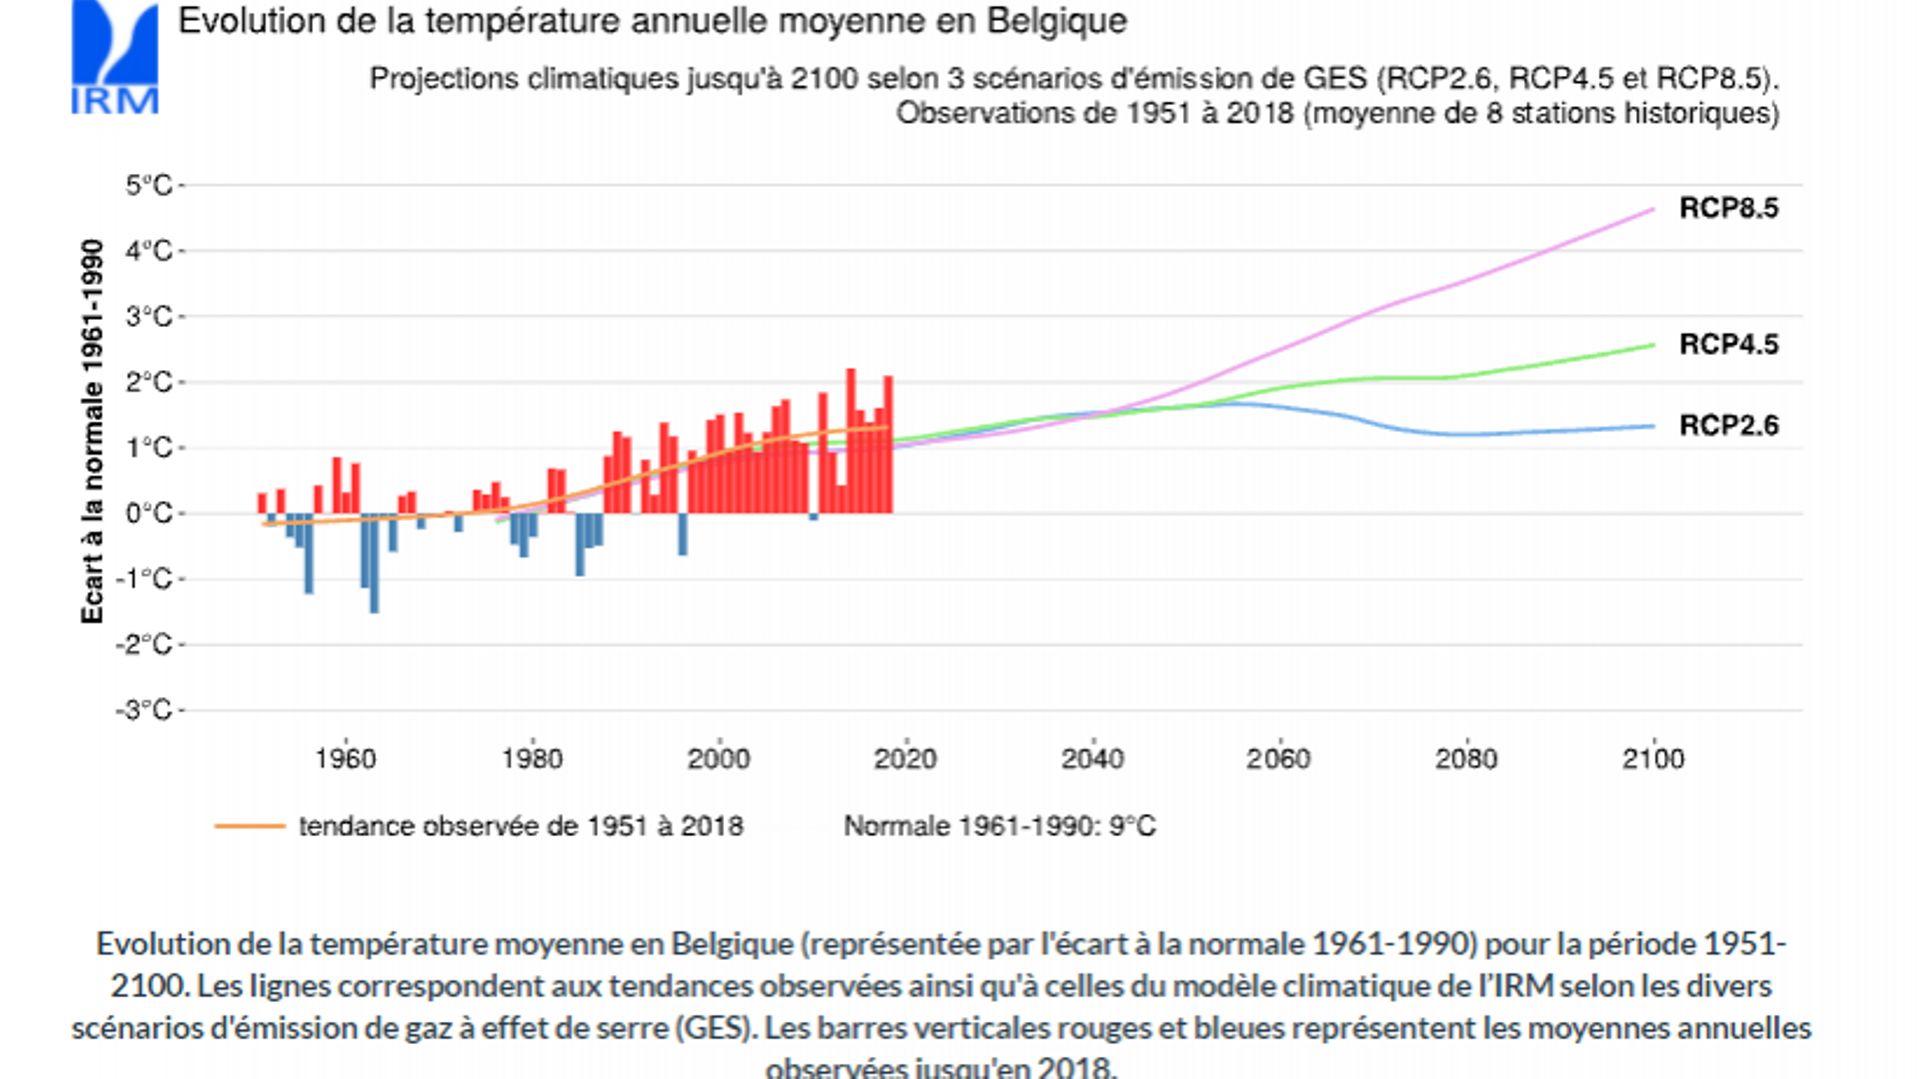 Evolution des températures selon les trois scénarios du GIEC (source : IRM)